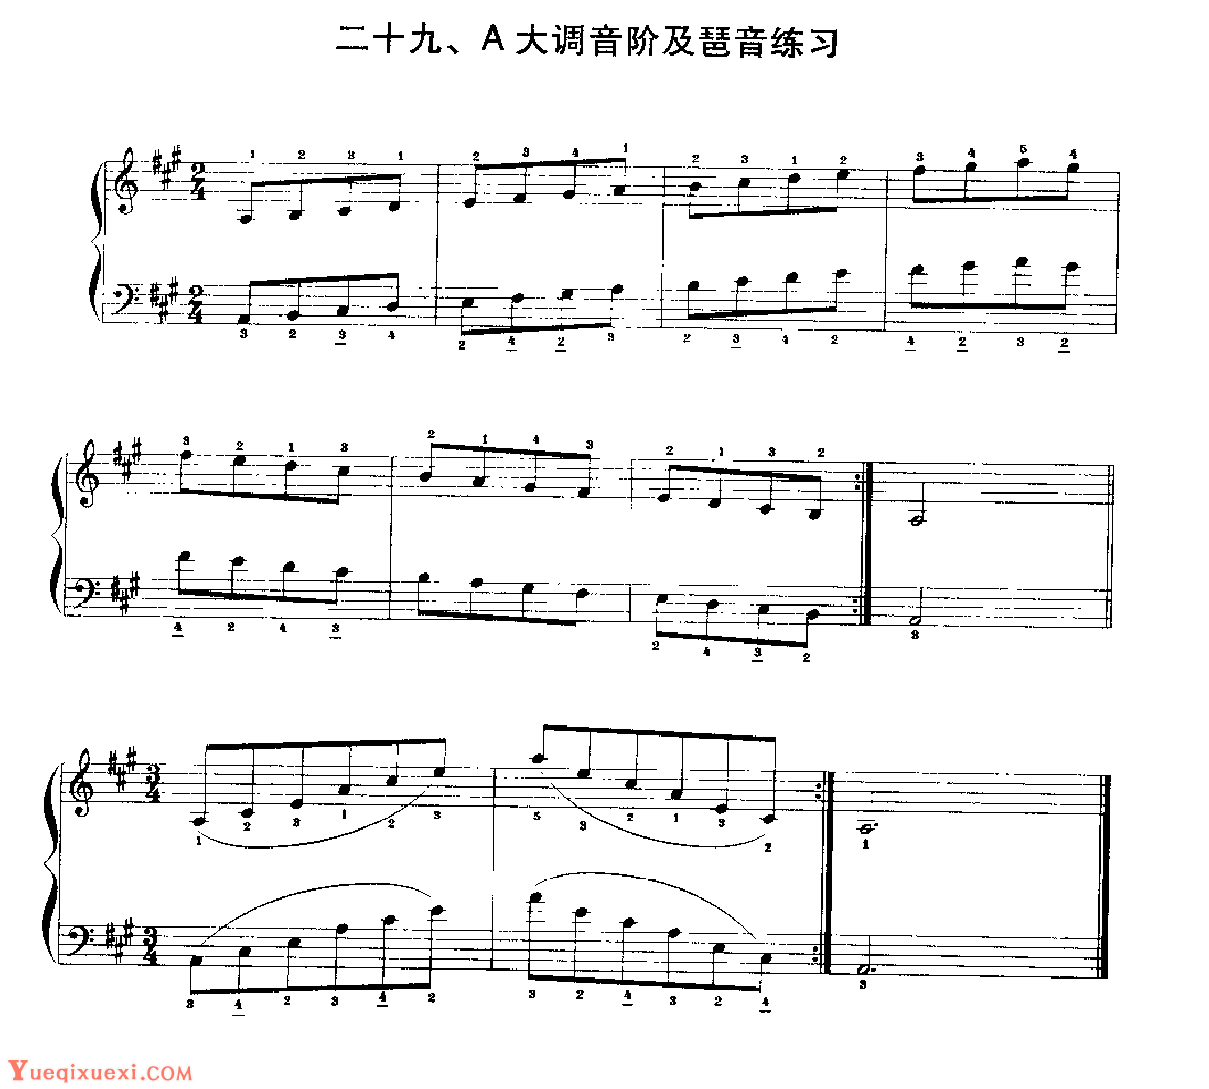 手风琴A大调音阶及琶音练习